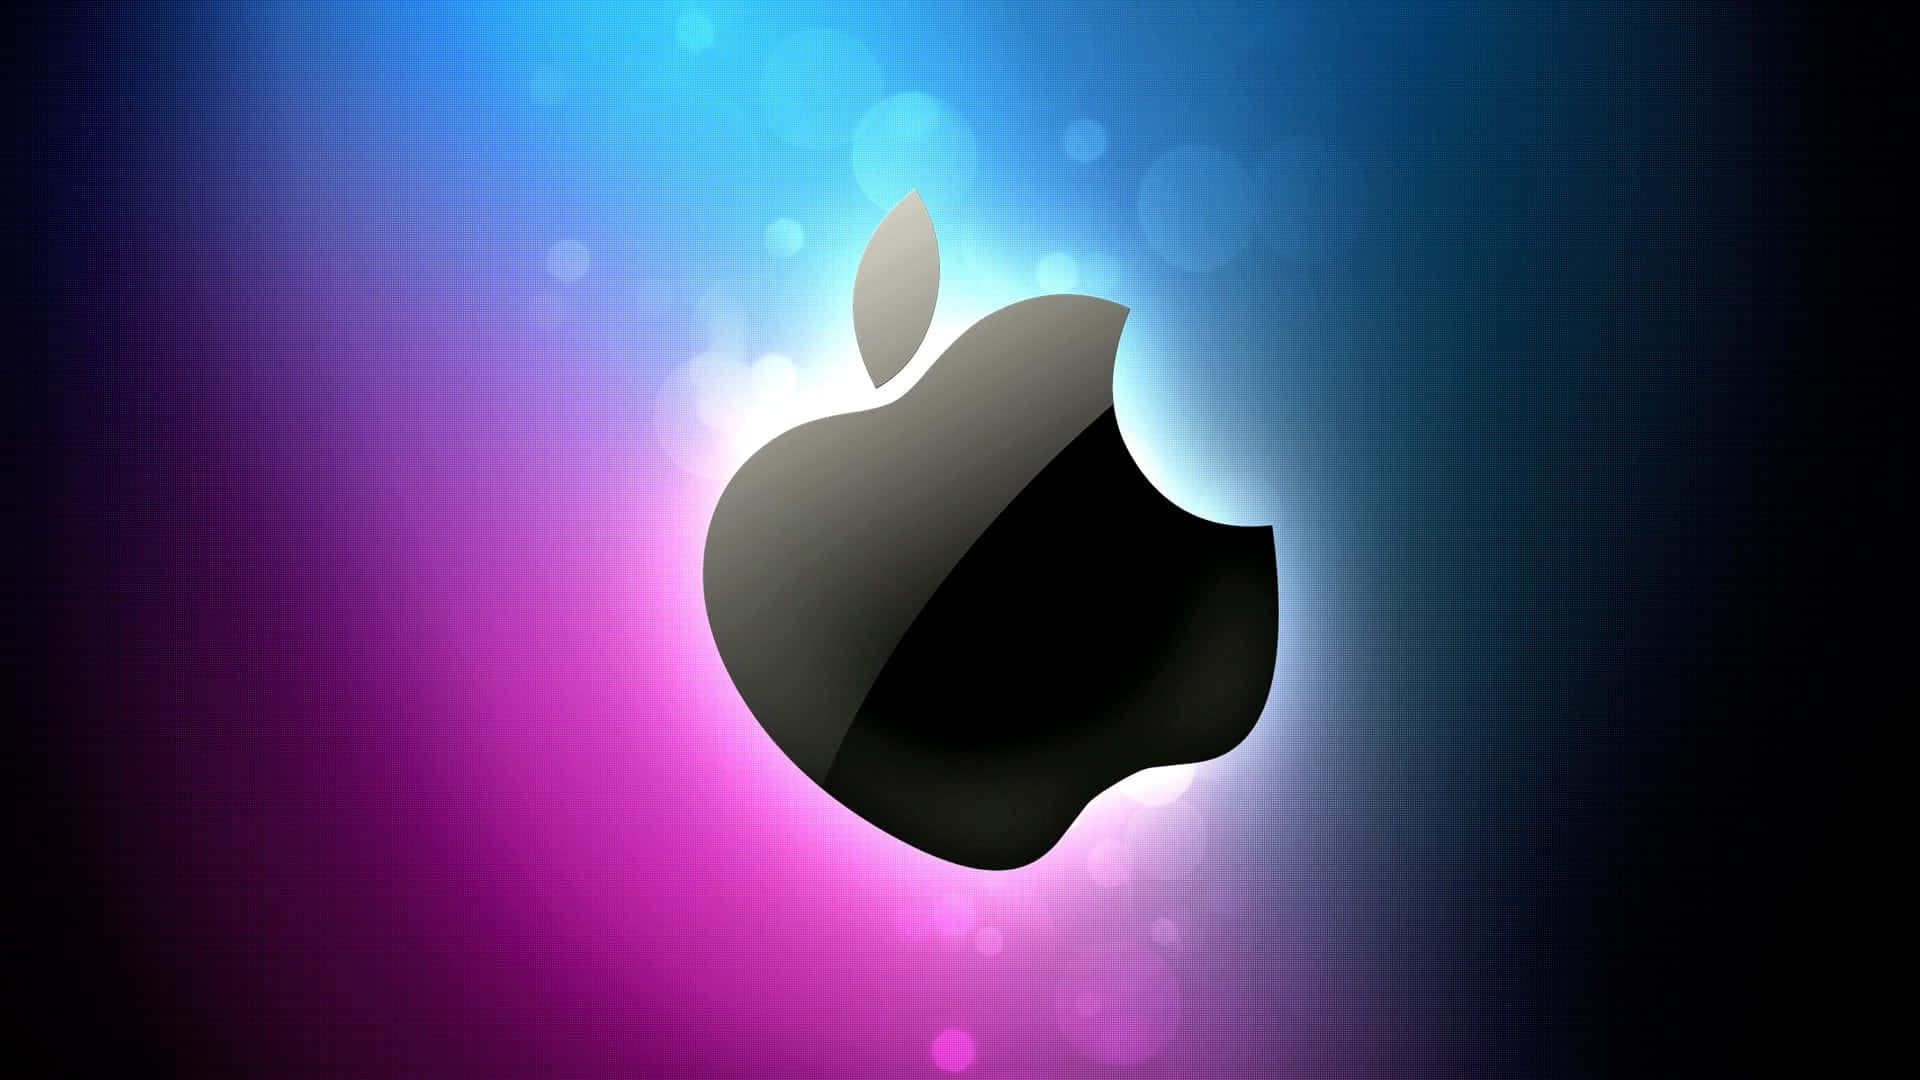 Logotipode Apple En Negro En Tonos Morados Y Azules Fondo de pantalla